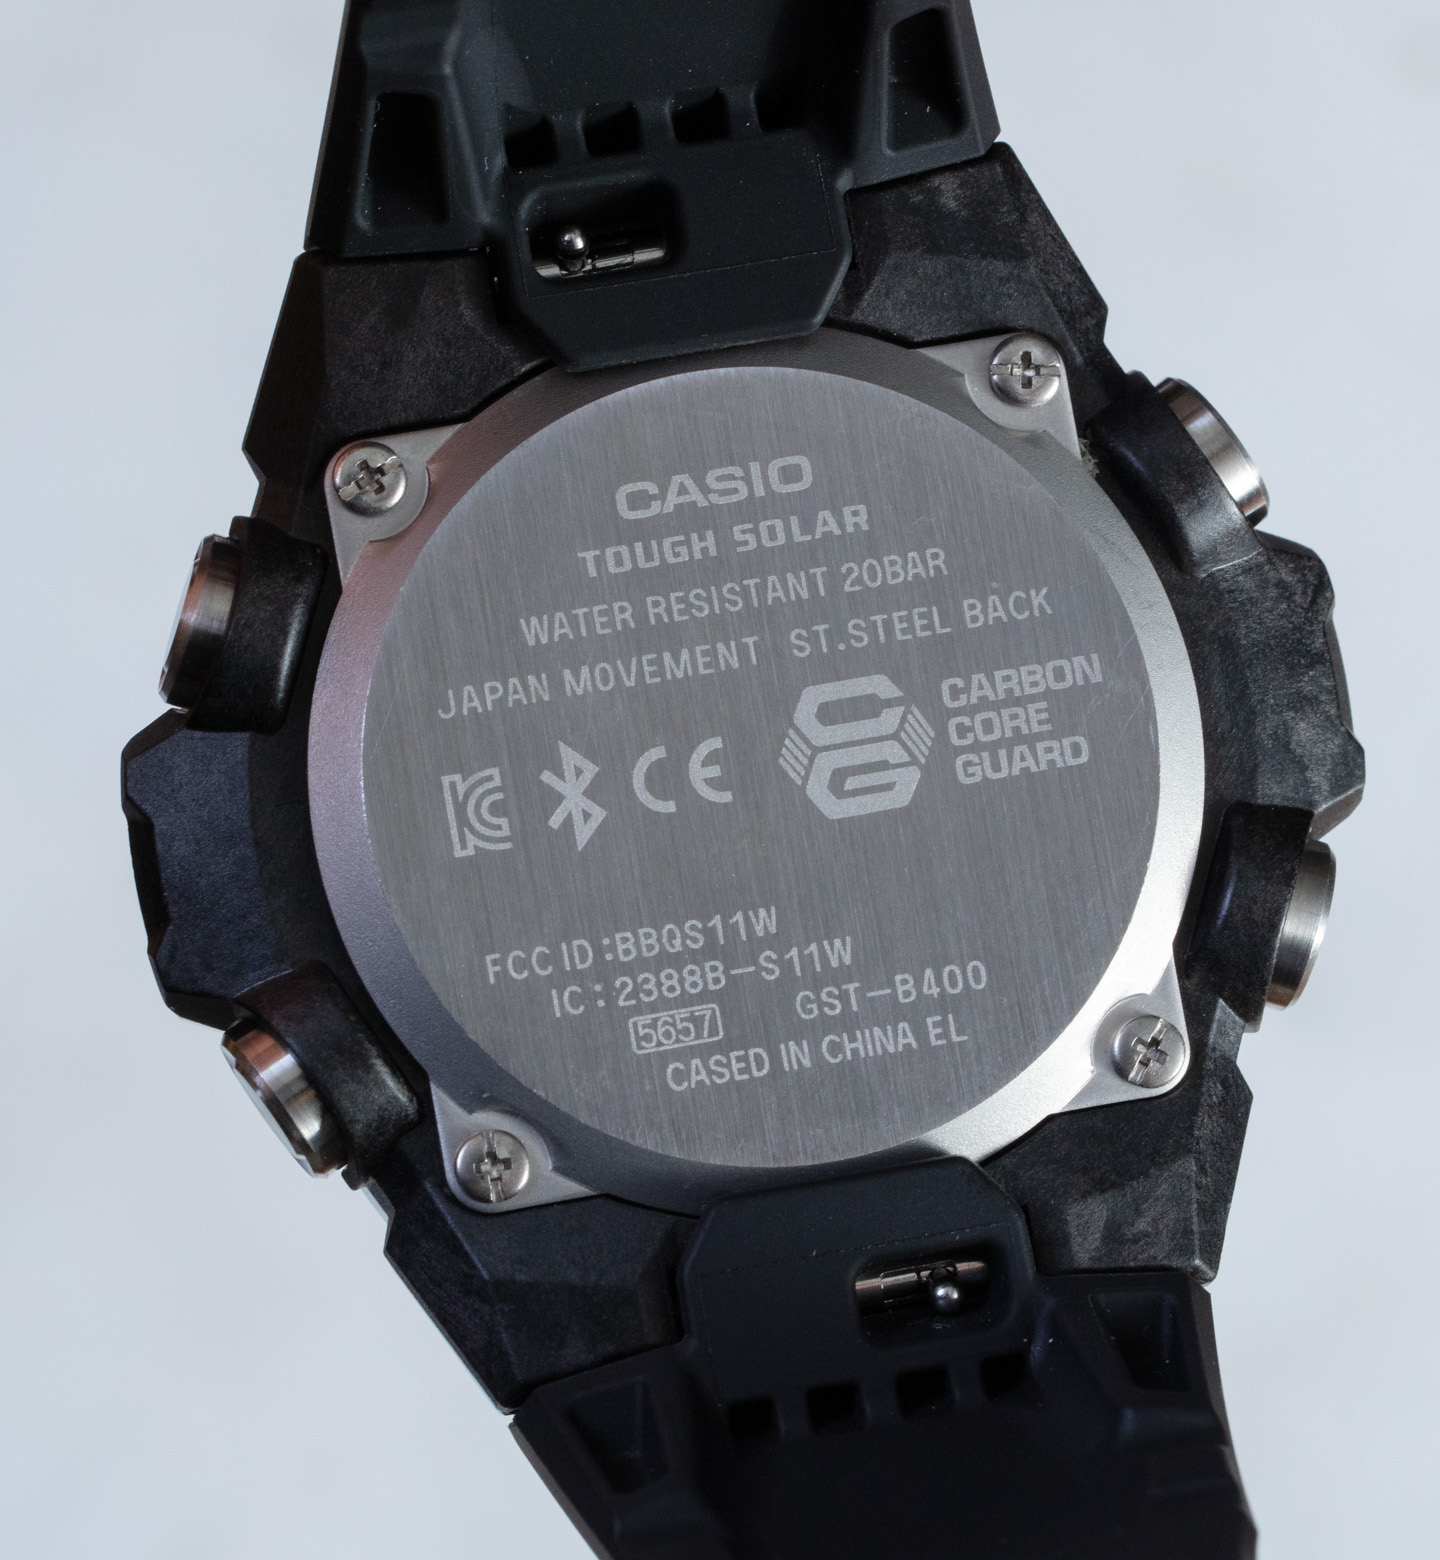 Casio G-SHOCK G-STEEL GSTB300S-1A Watch Review